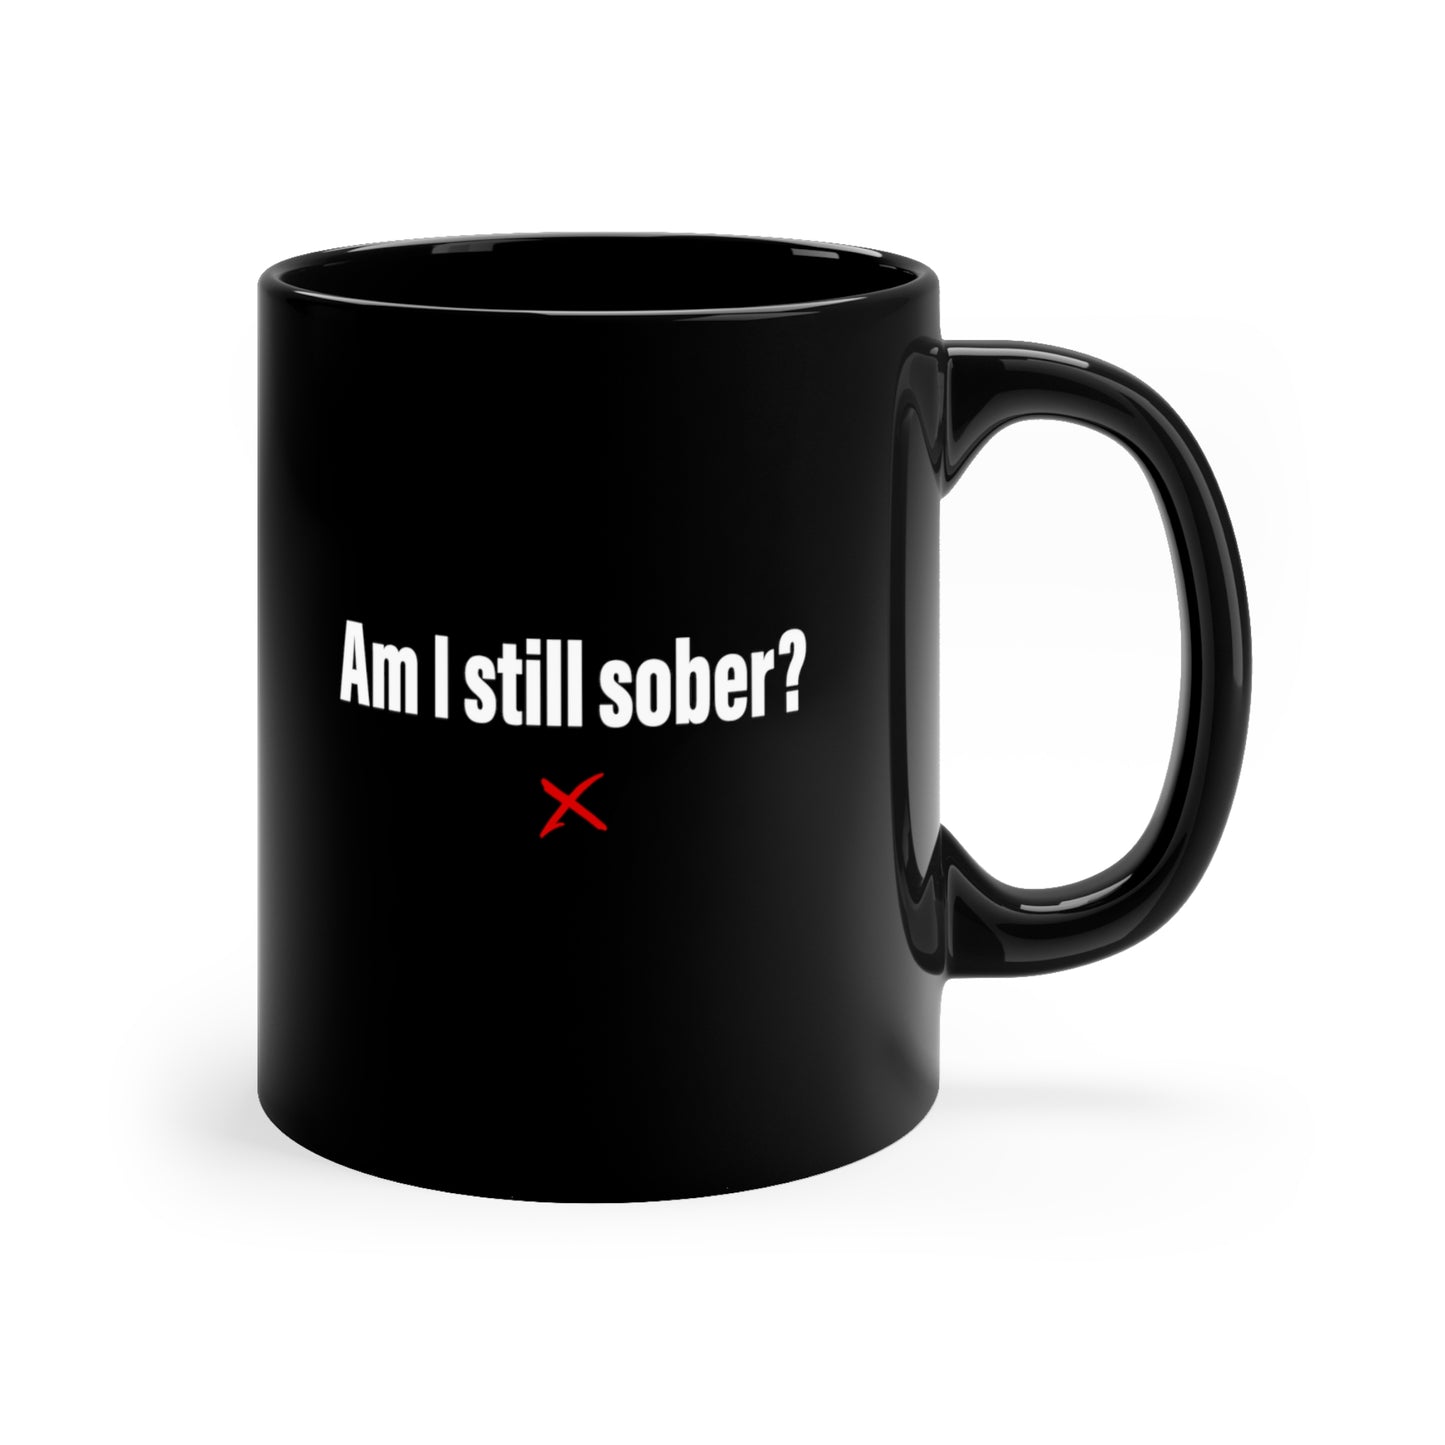 Am I still sober? - Mug